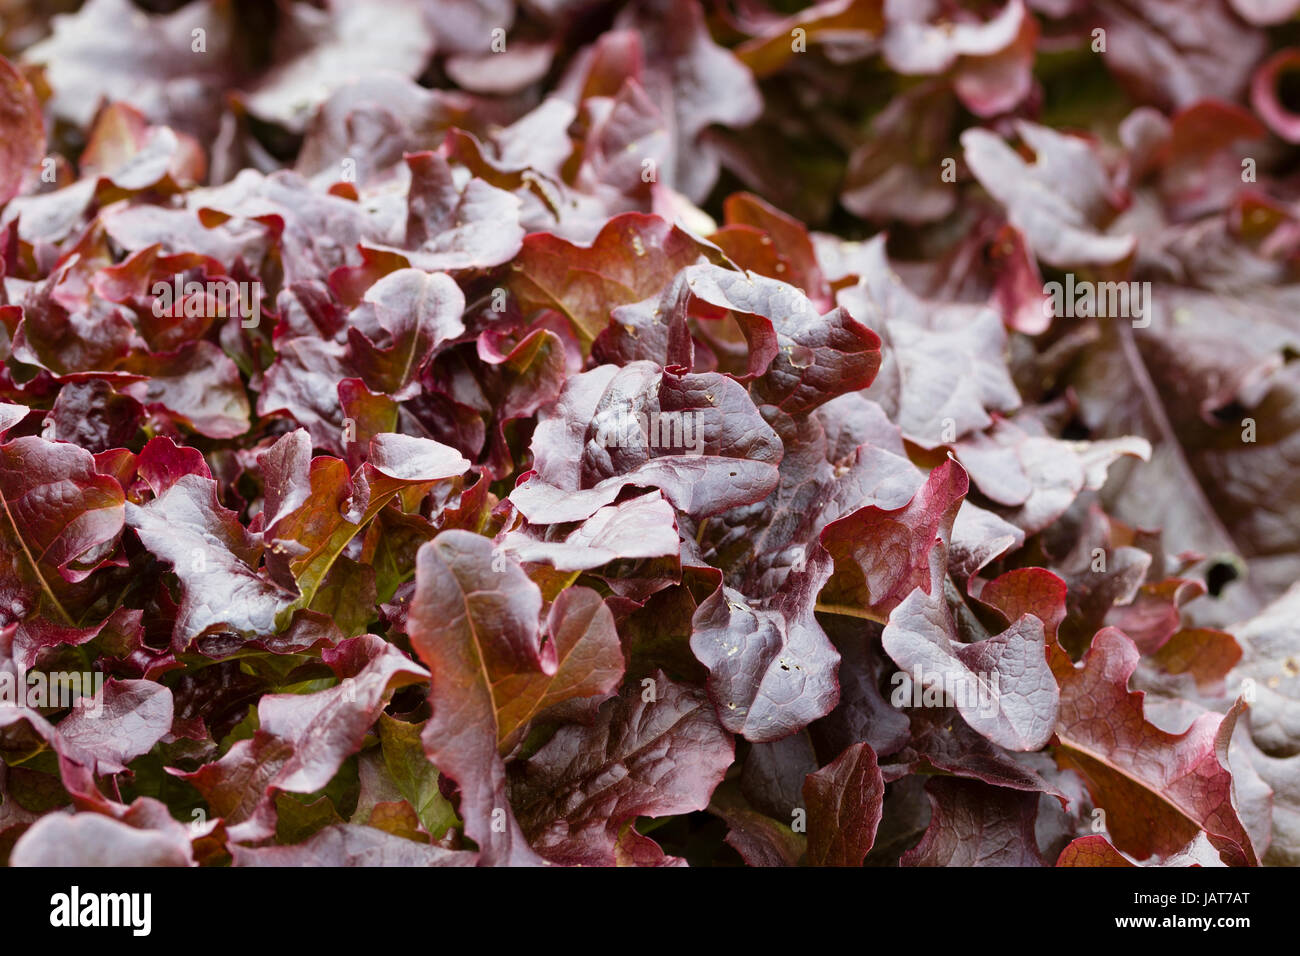 Bronceado hojas rojas de la lechuga tipo loosehead popular, 'Rojo Ensaladera' Foto de stock